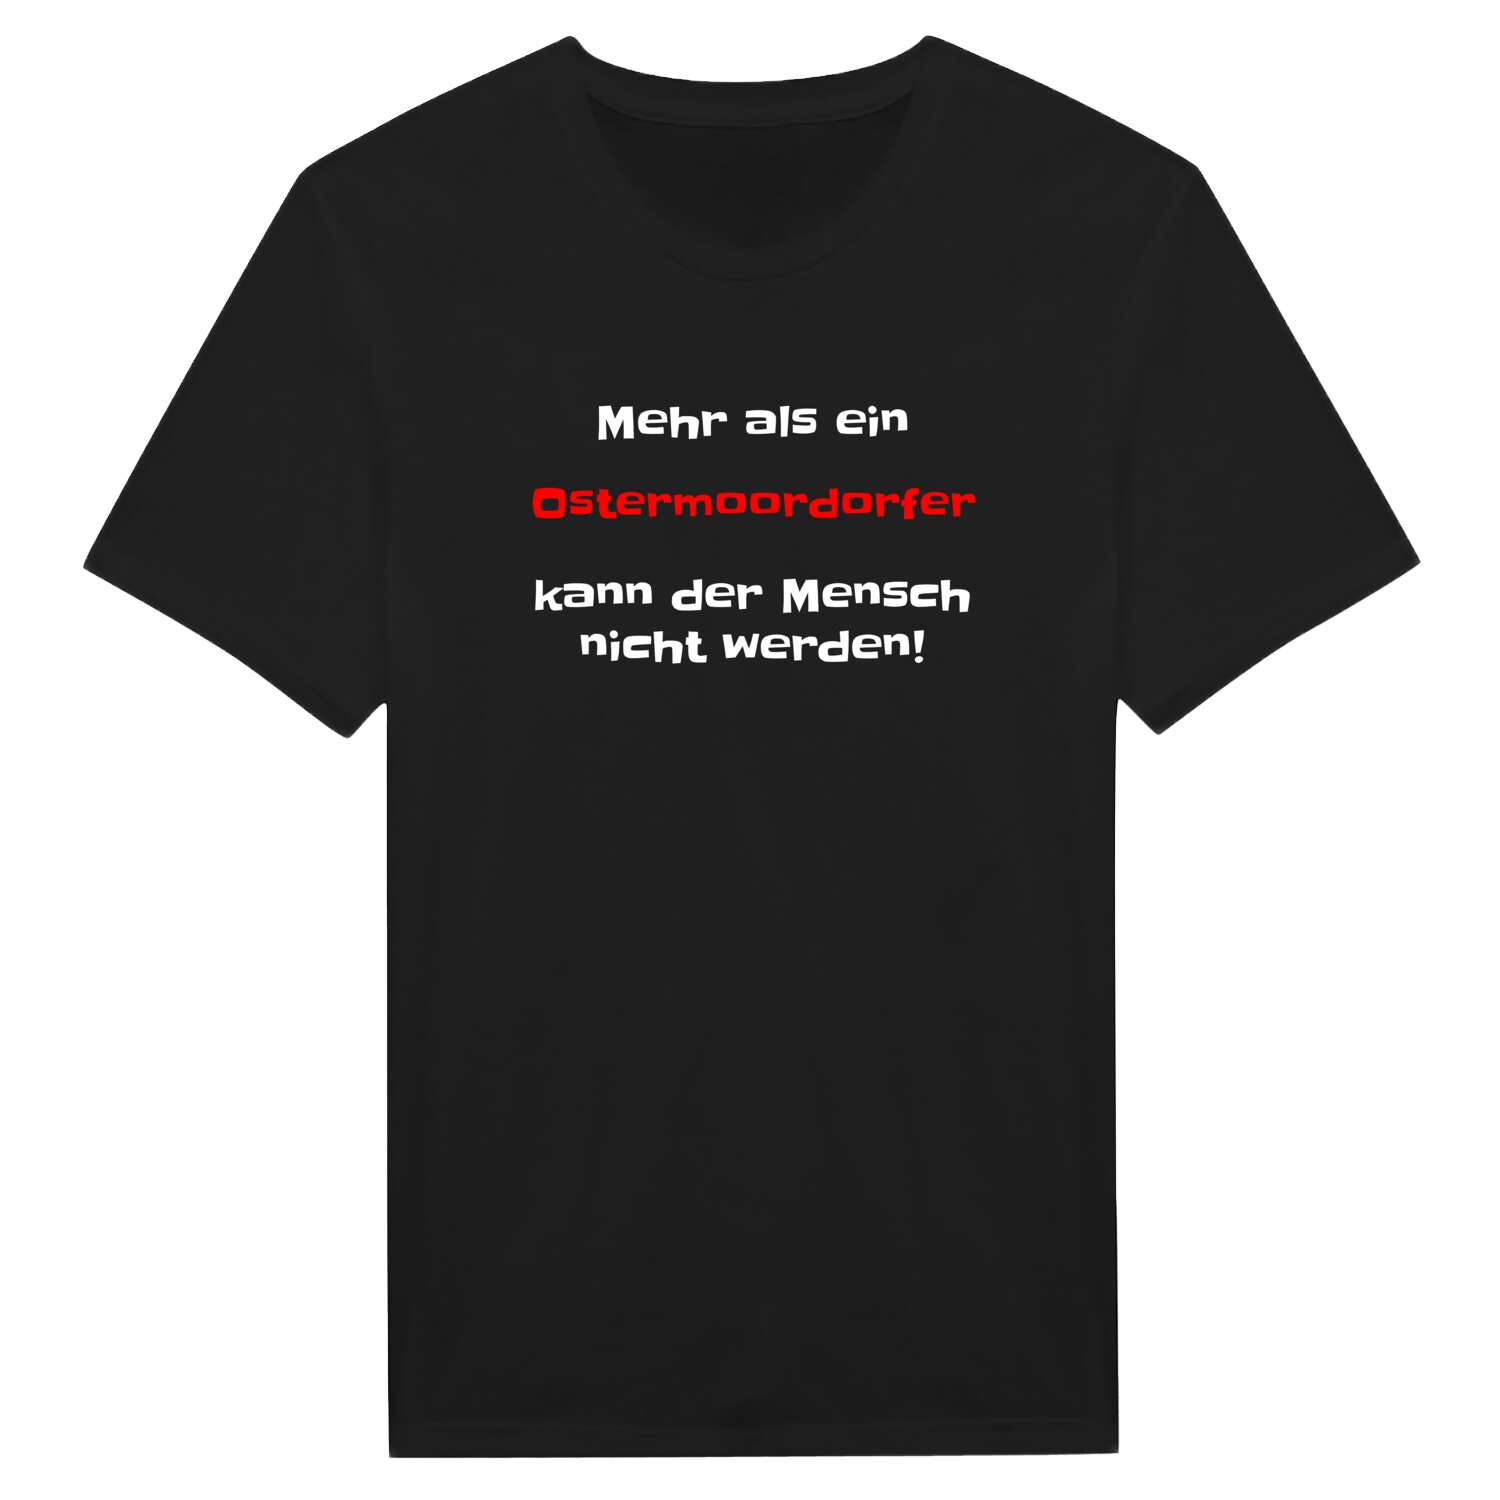 Ostermoordorf T-Shirt »Mehr als ein«